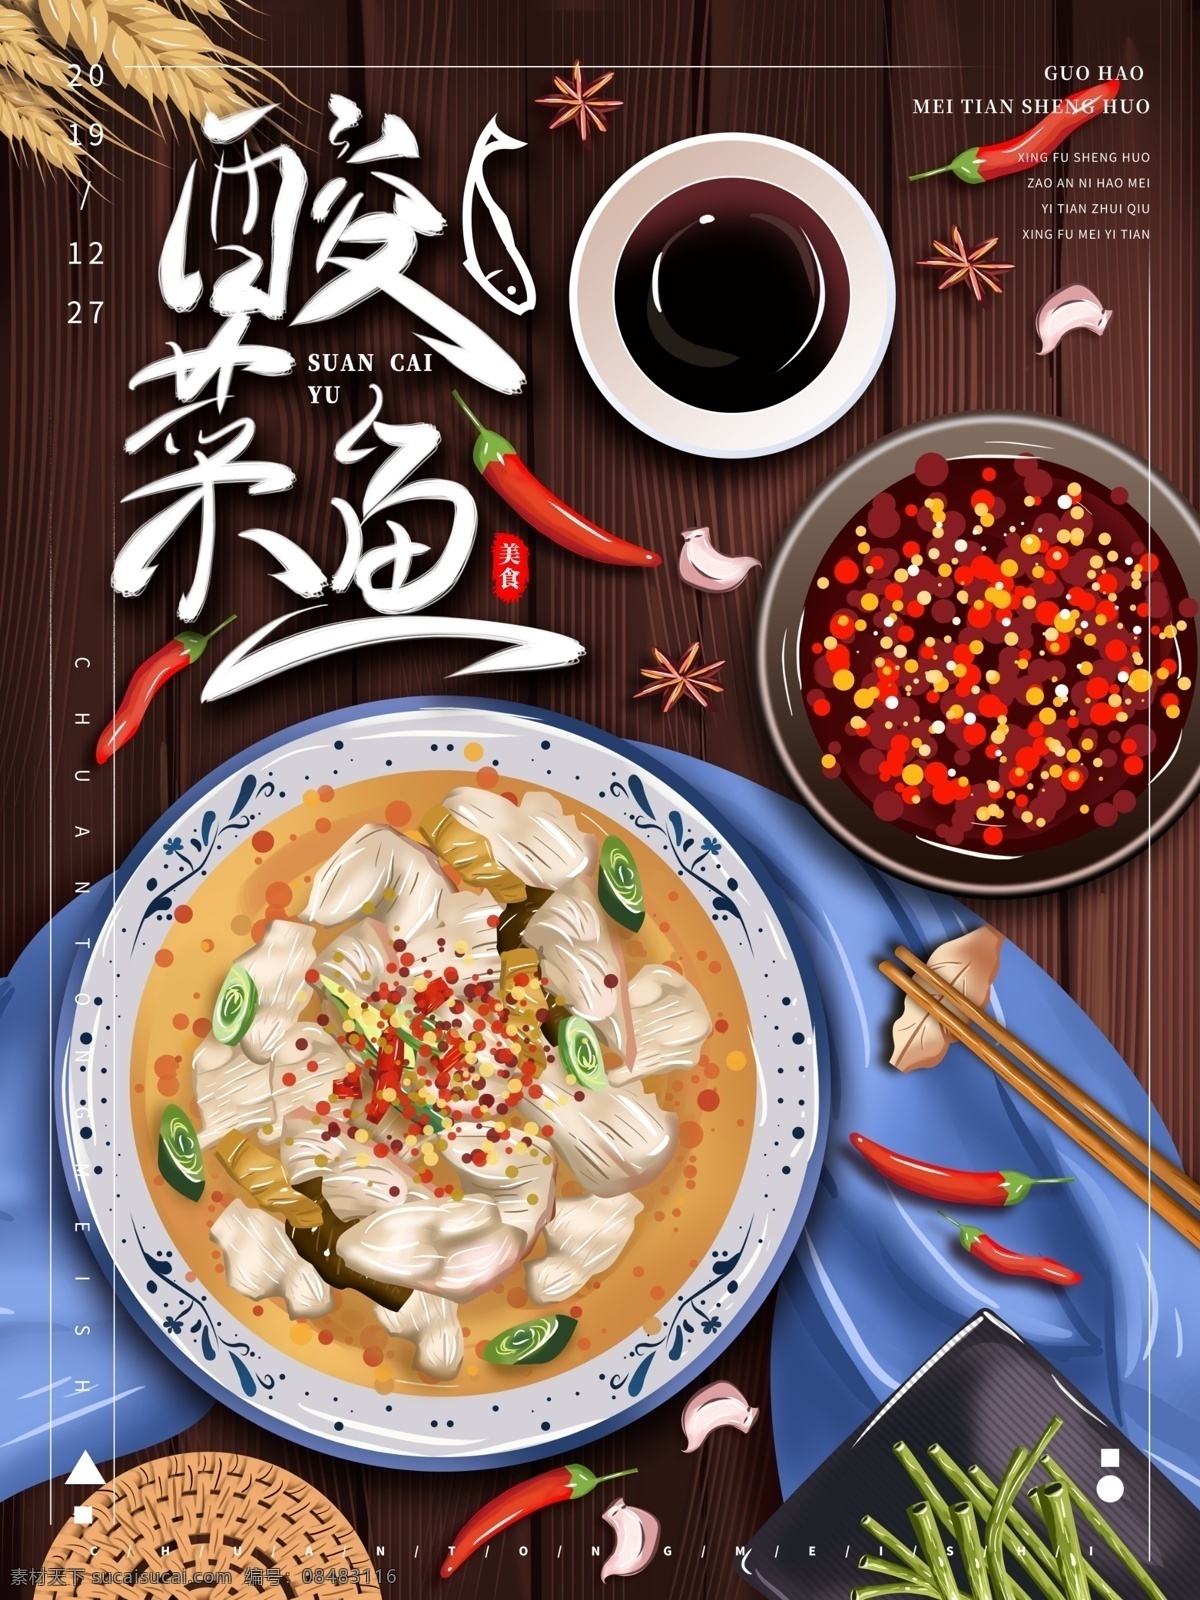 酸菜鱼图片 酸菜鱼 a4 海报 国潮 中式 中国风 手绘 矢量 美食